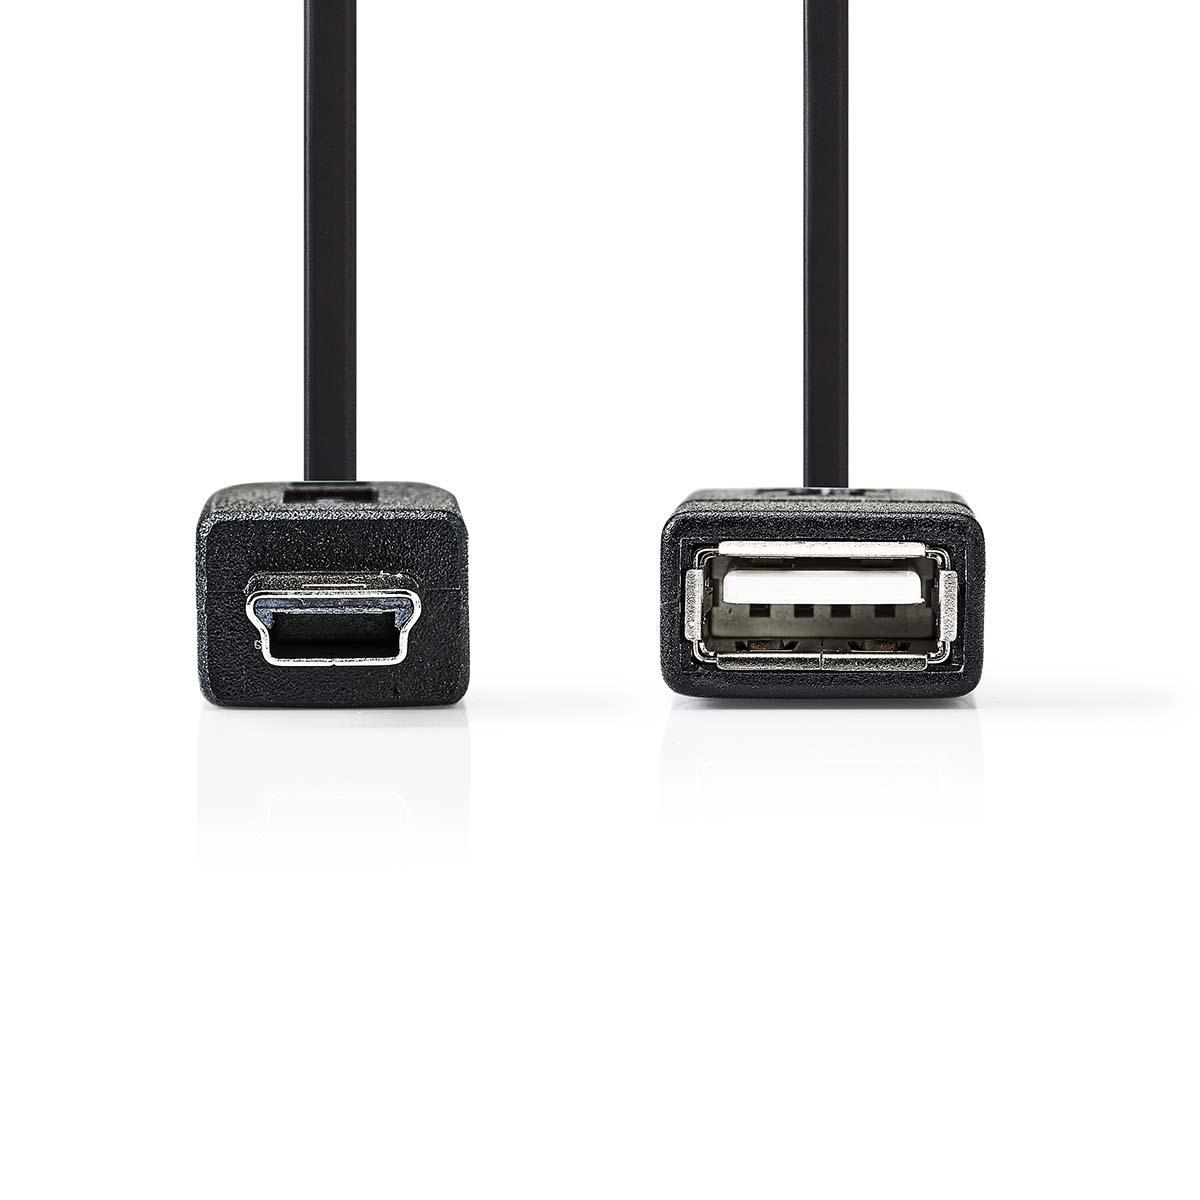 USB Micro-B CCGP60315BK02 Adapter NEDIS